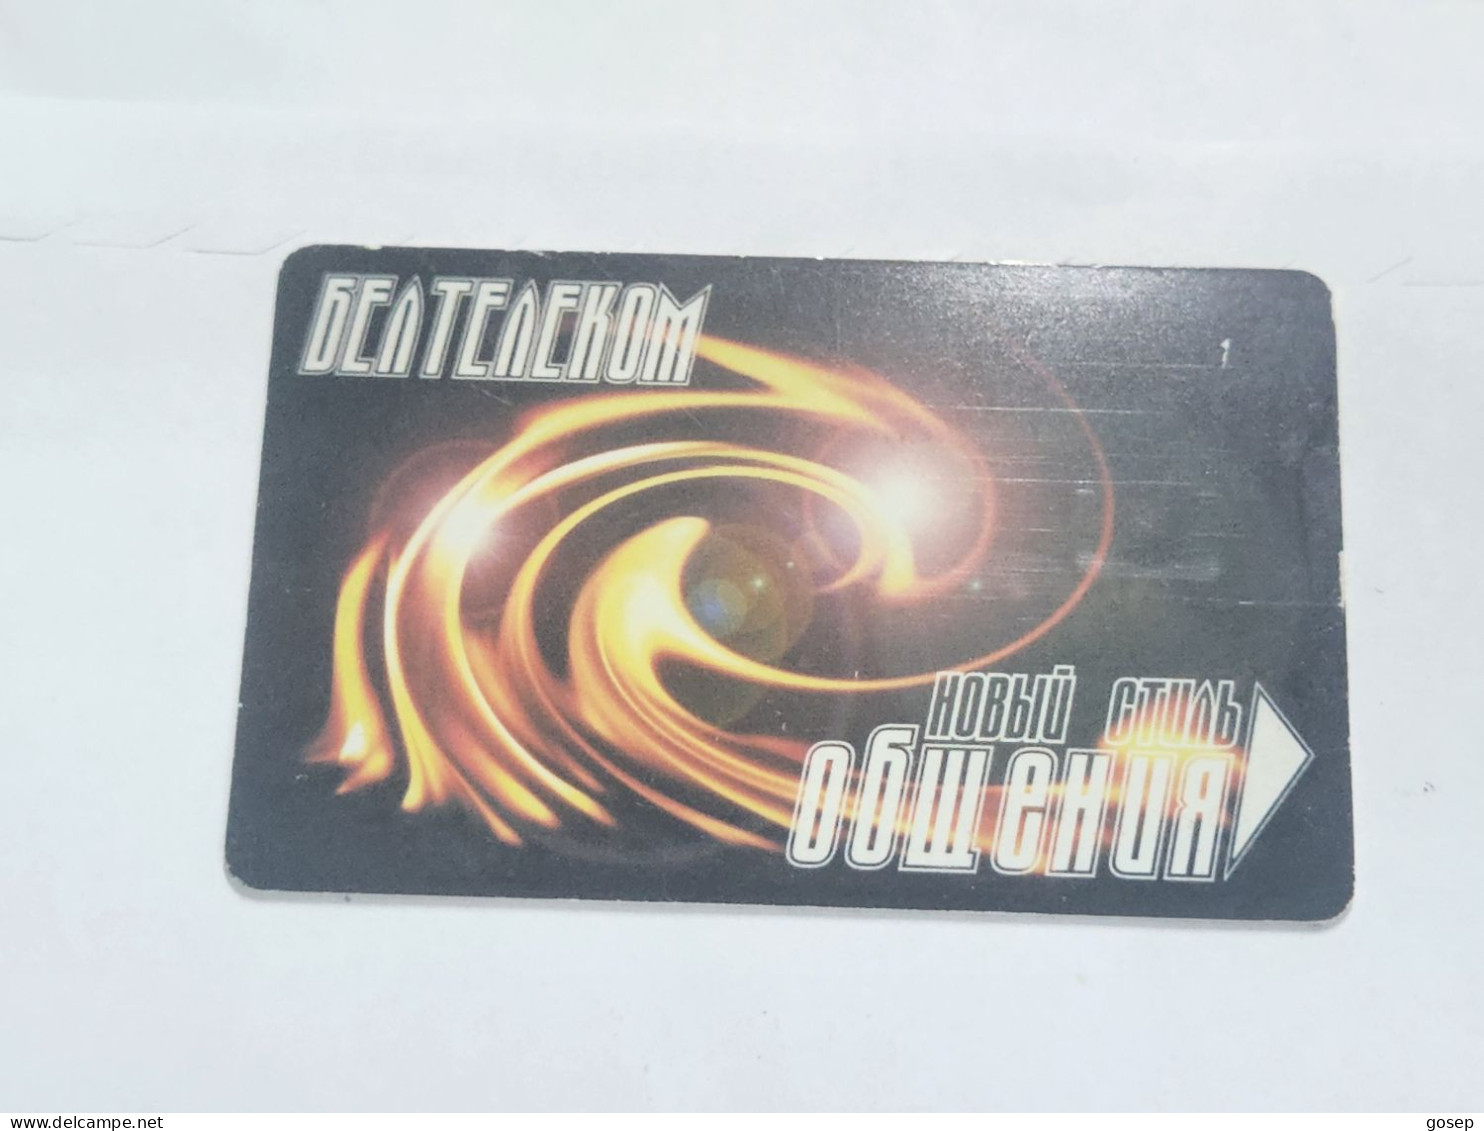 BELARUS-(BY-BLT-123C)-Beltelecom-New-(106)(GOLD CHIP)(068743)(tirage-500)used Card+1card Prepiad Free - Belarus